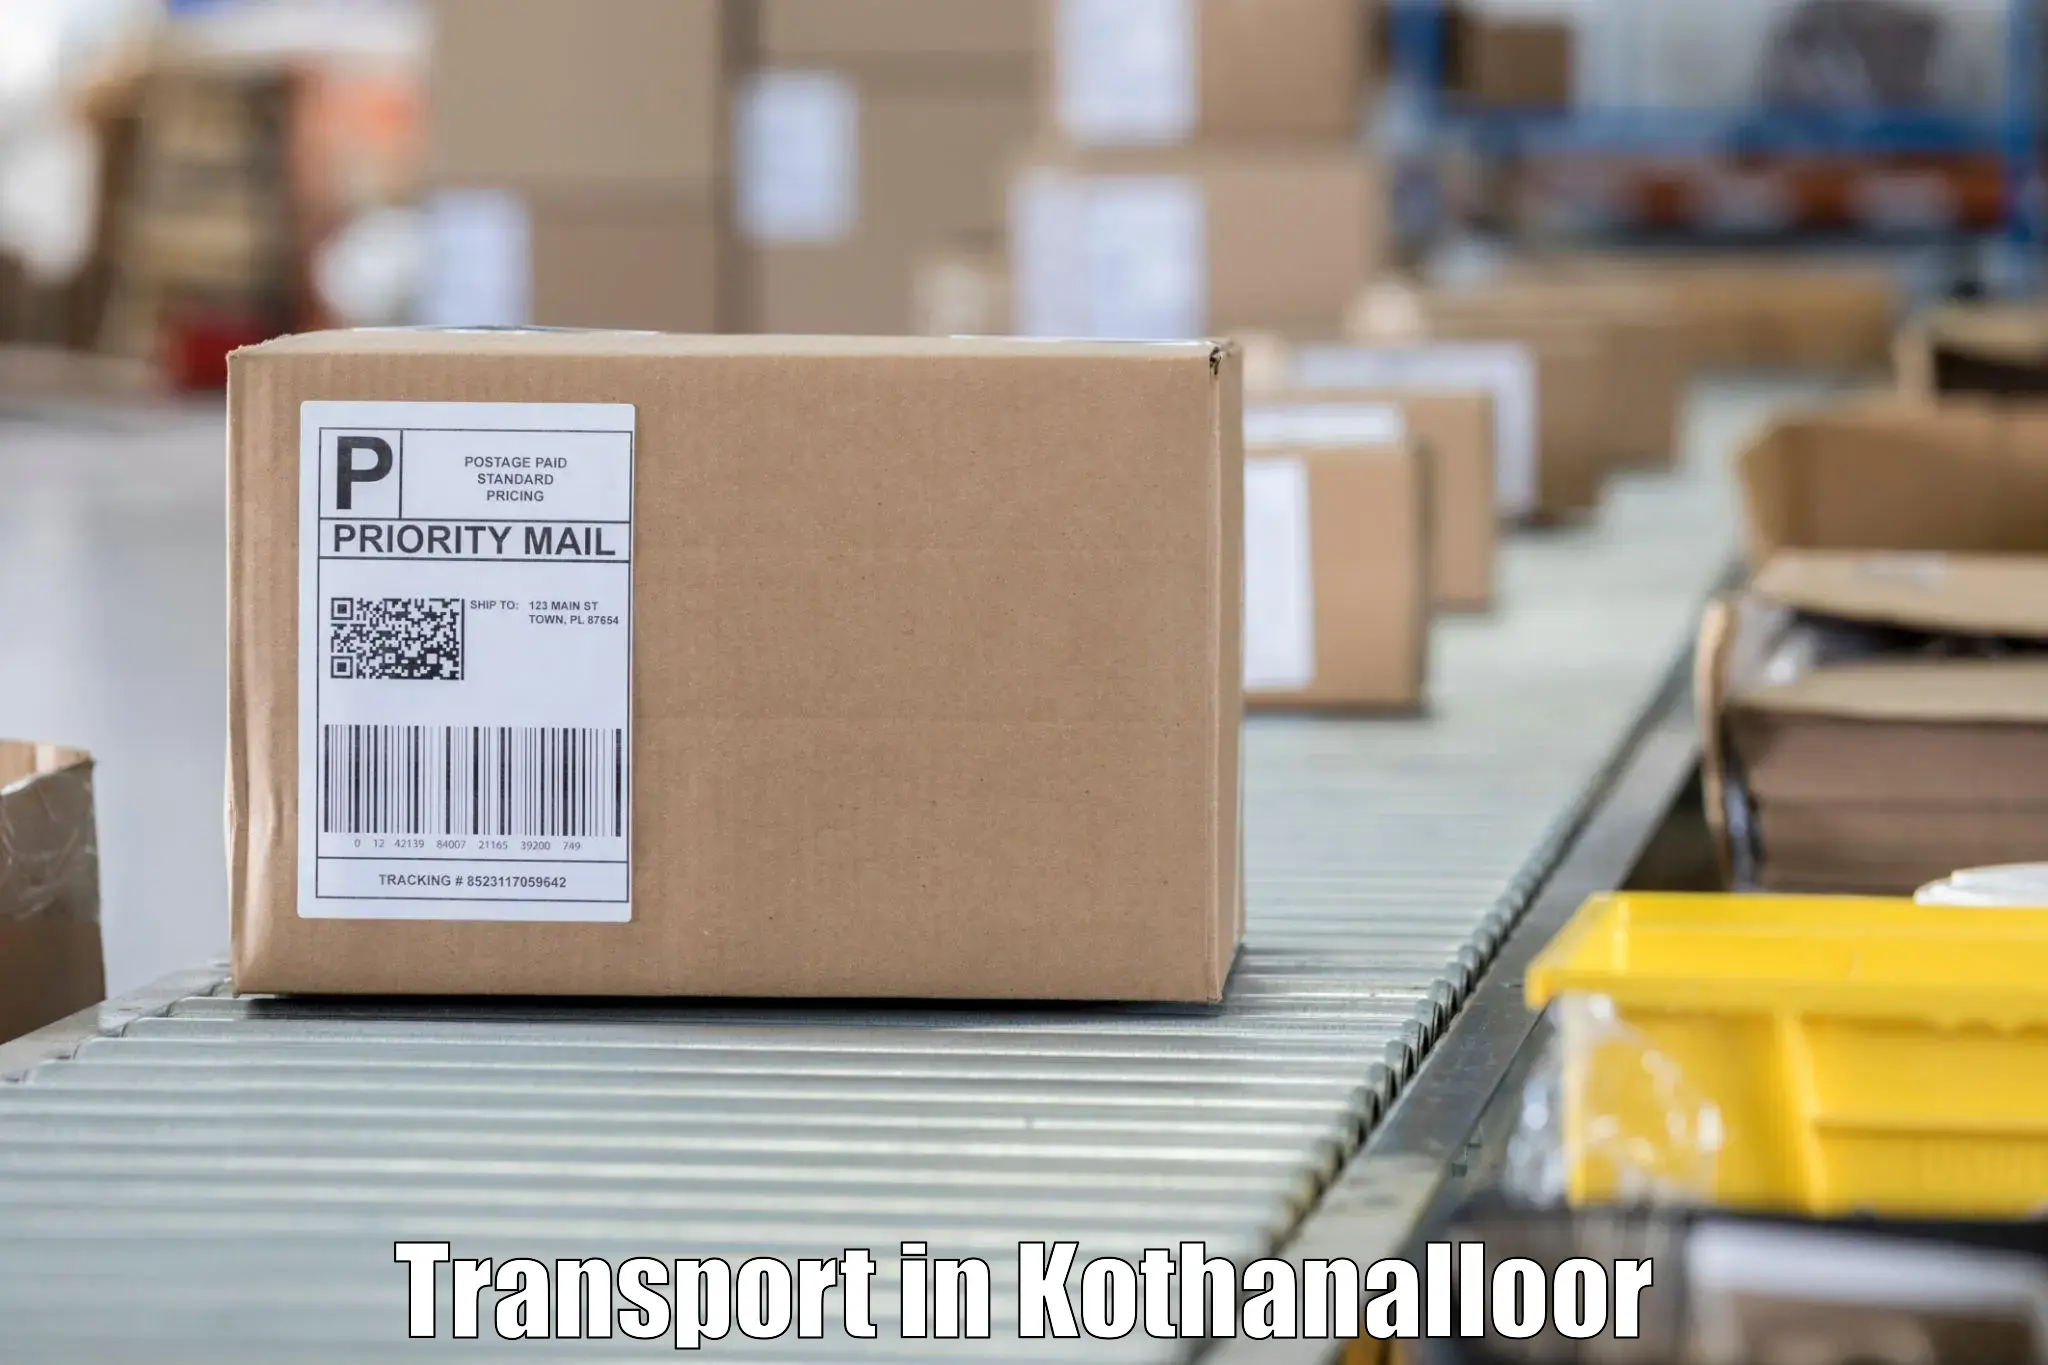 Cargo transportation services in Kothanalloor